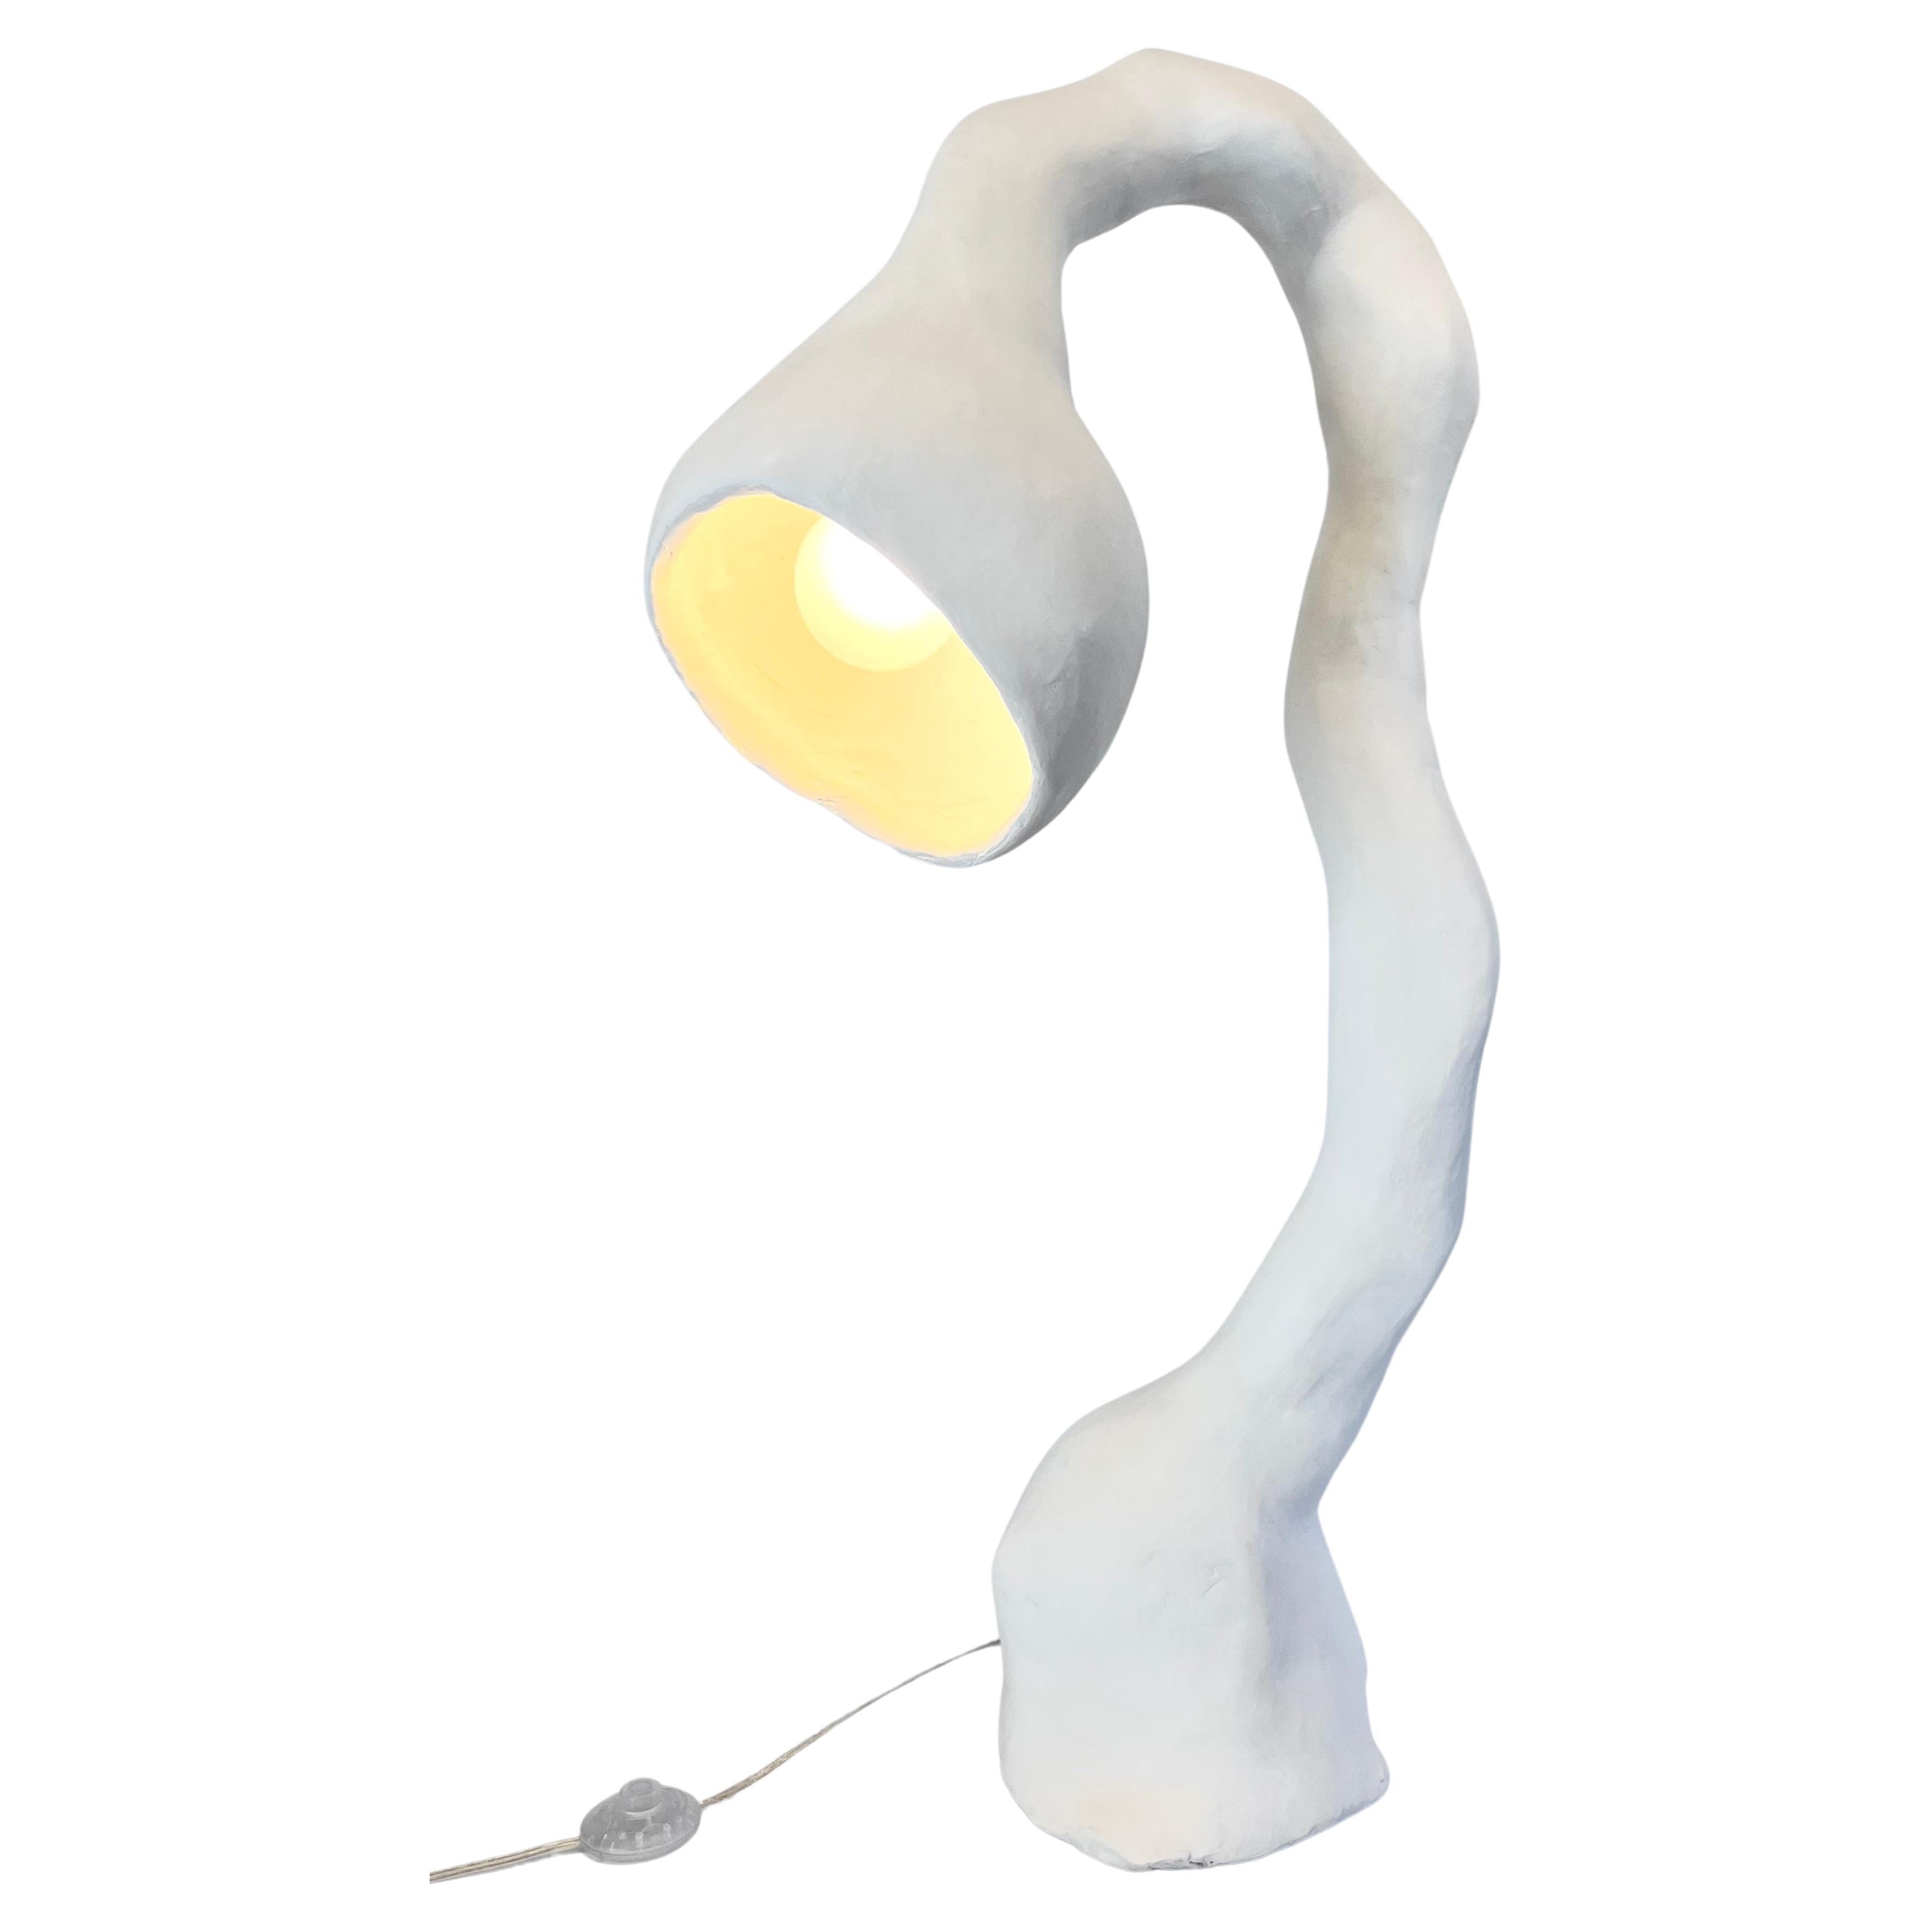 Biomorphe Stehlampe N.5 von Studio Chora, Stehleuchte, weißer Stein, auf Lager